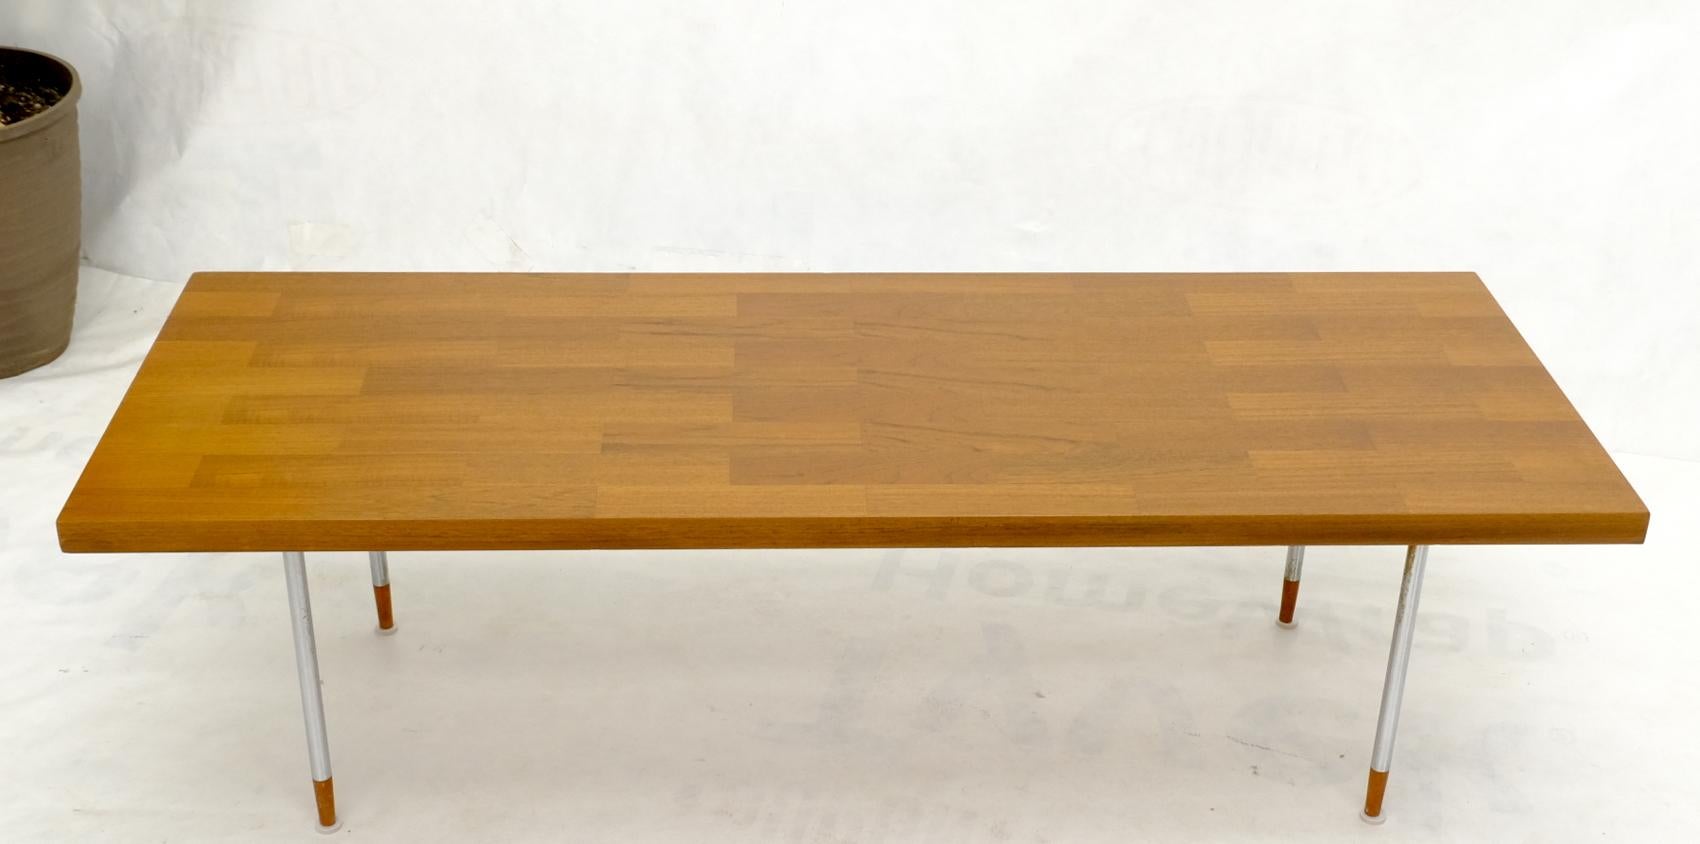 Table basse rectangulaire en teck, de style moderne du milieu du siècle, reposant sur des pieds cylindriques chromés avec des extrémités de pieds coniques en teck massif. Fabriqué en Hollande.